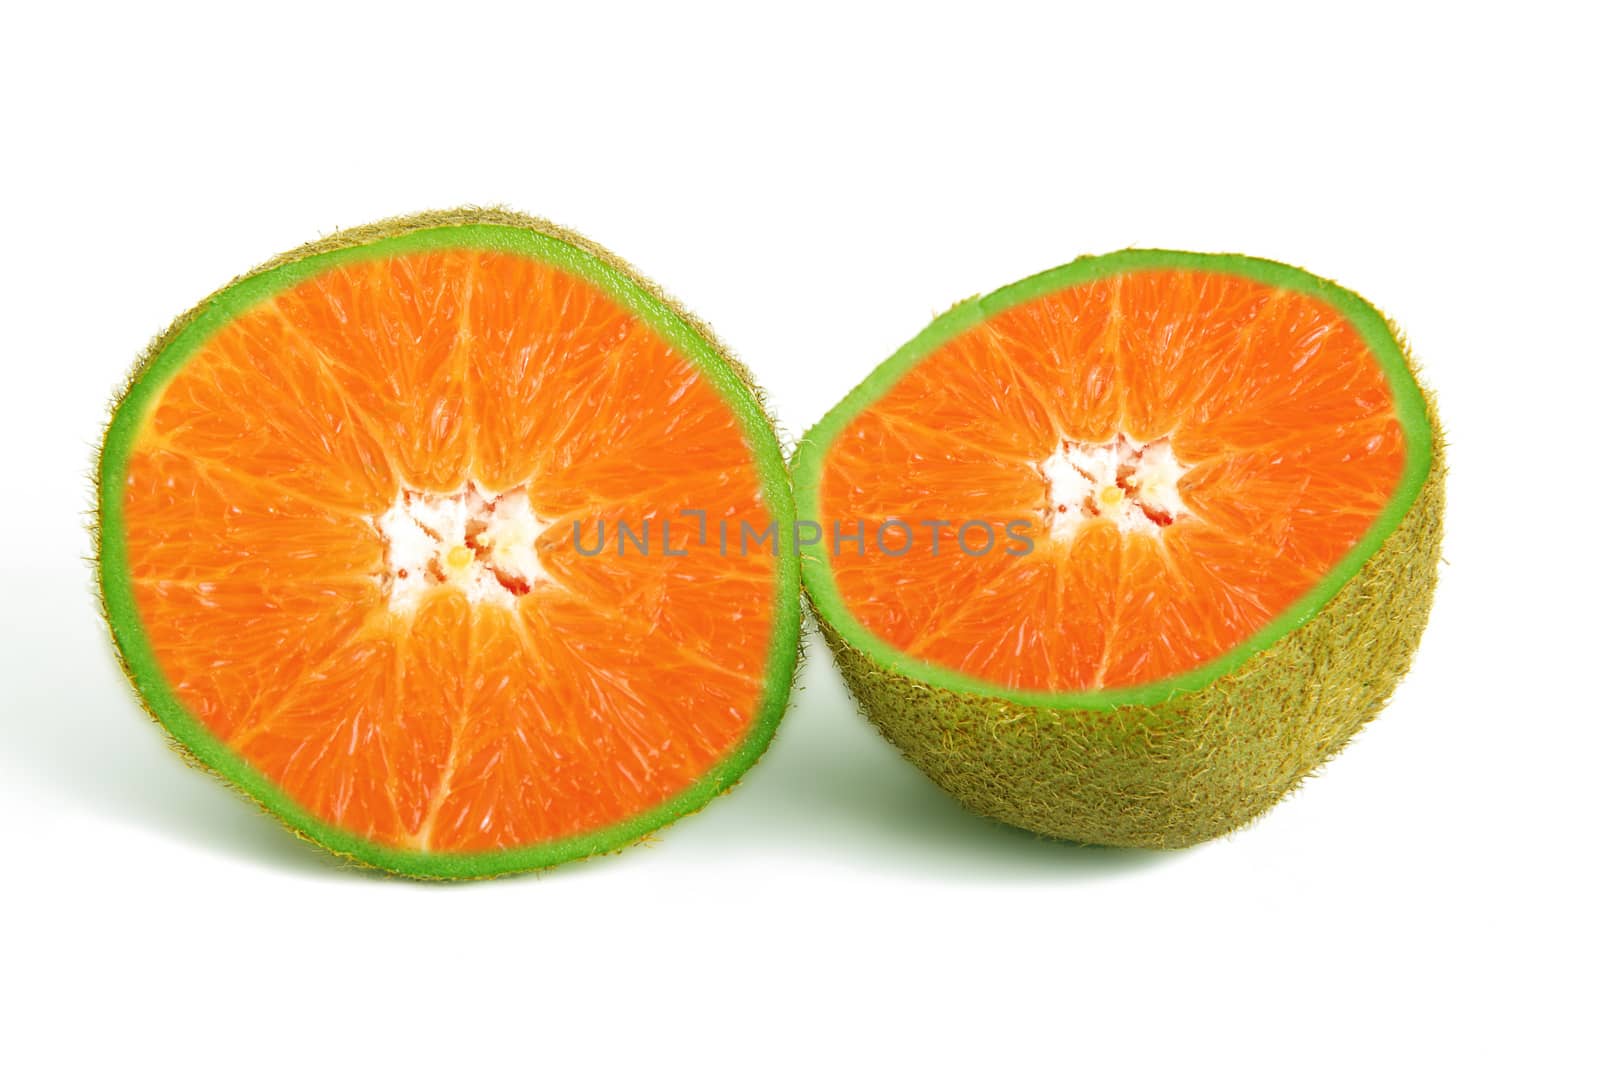 strange ibrid fruit orange-kiwi